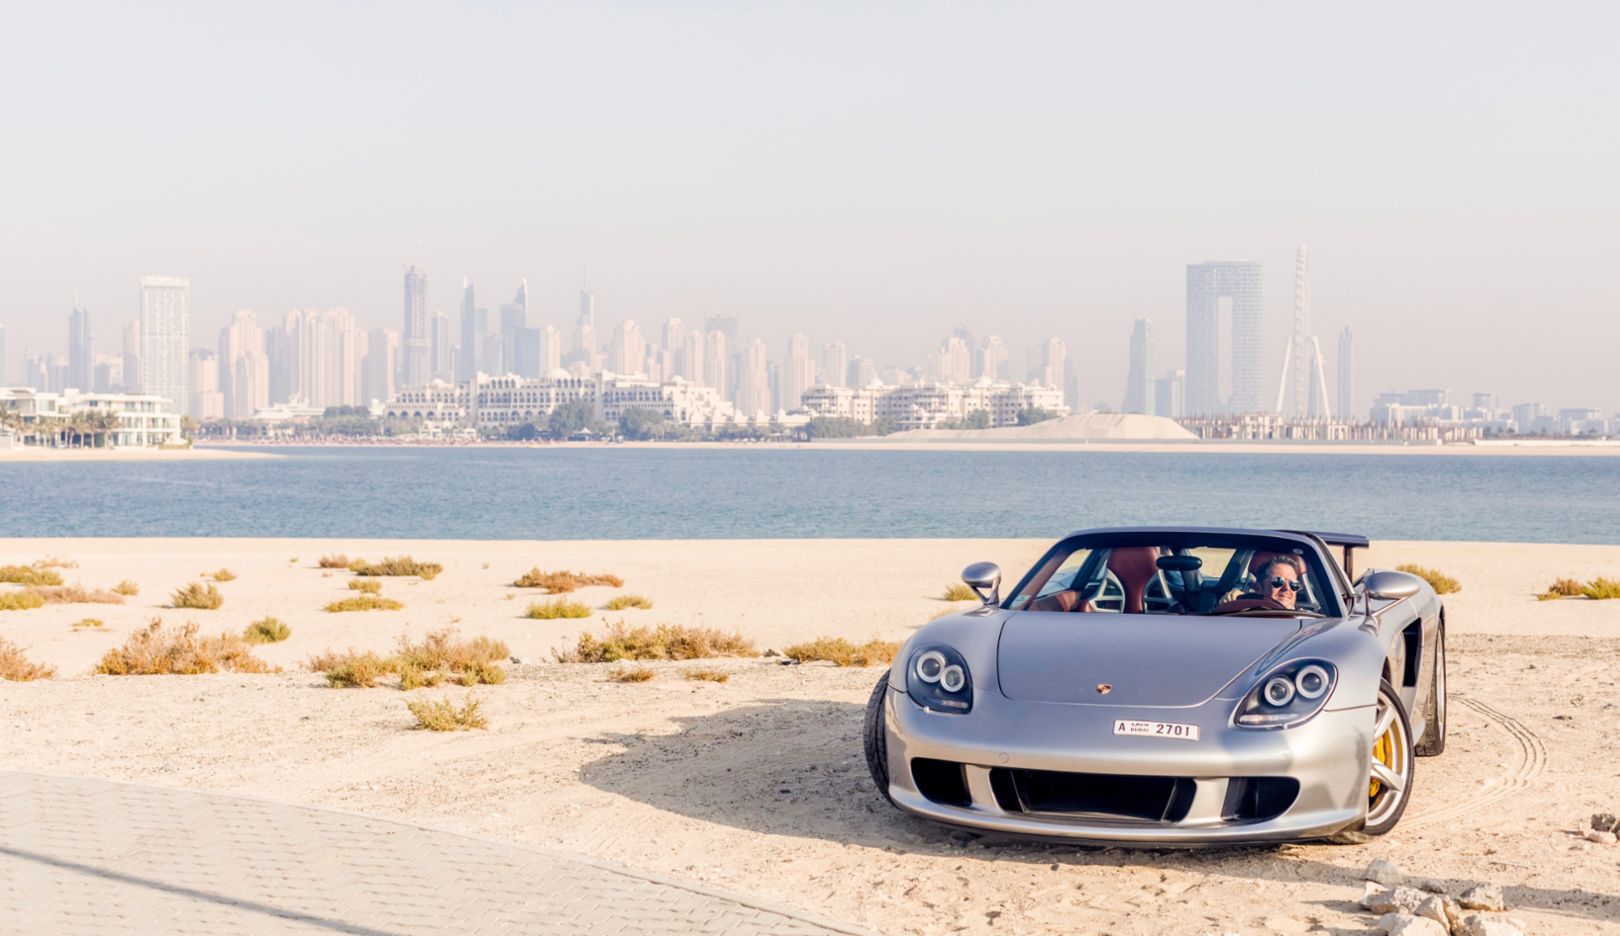 Mit dem Porsche Carrera GT besitzt Karim Al Azhari auch einen der seltenen Supersportwagen. Vor der Skyline Dubais macht die Rarität eine besonders gute Figur.